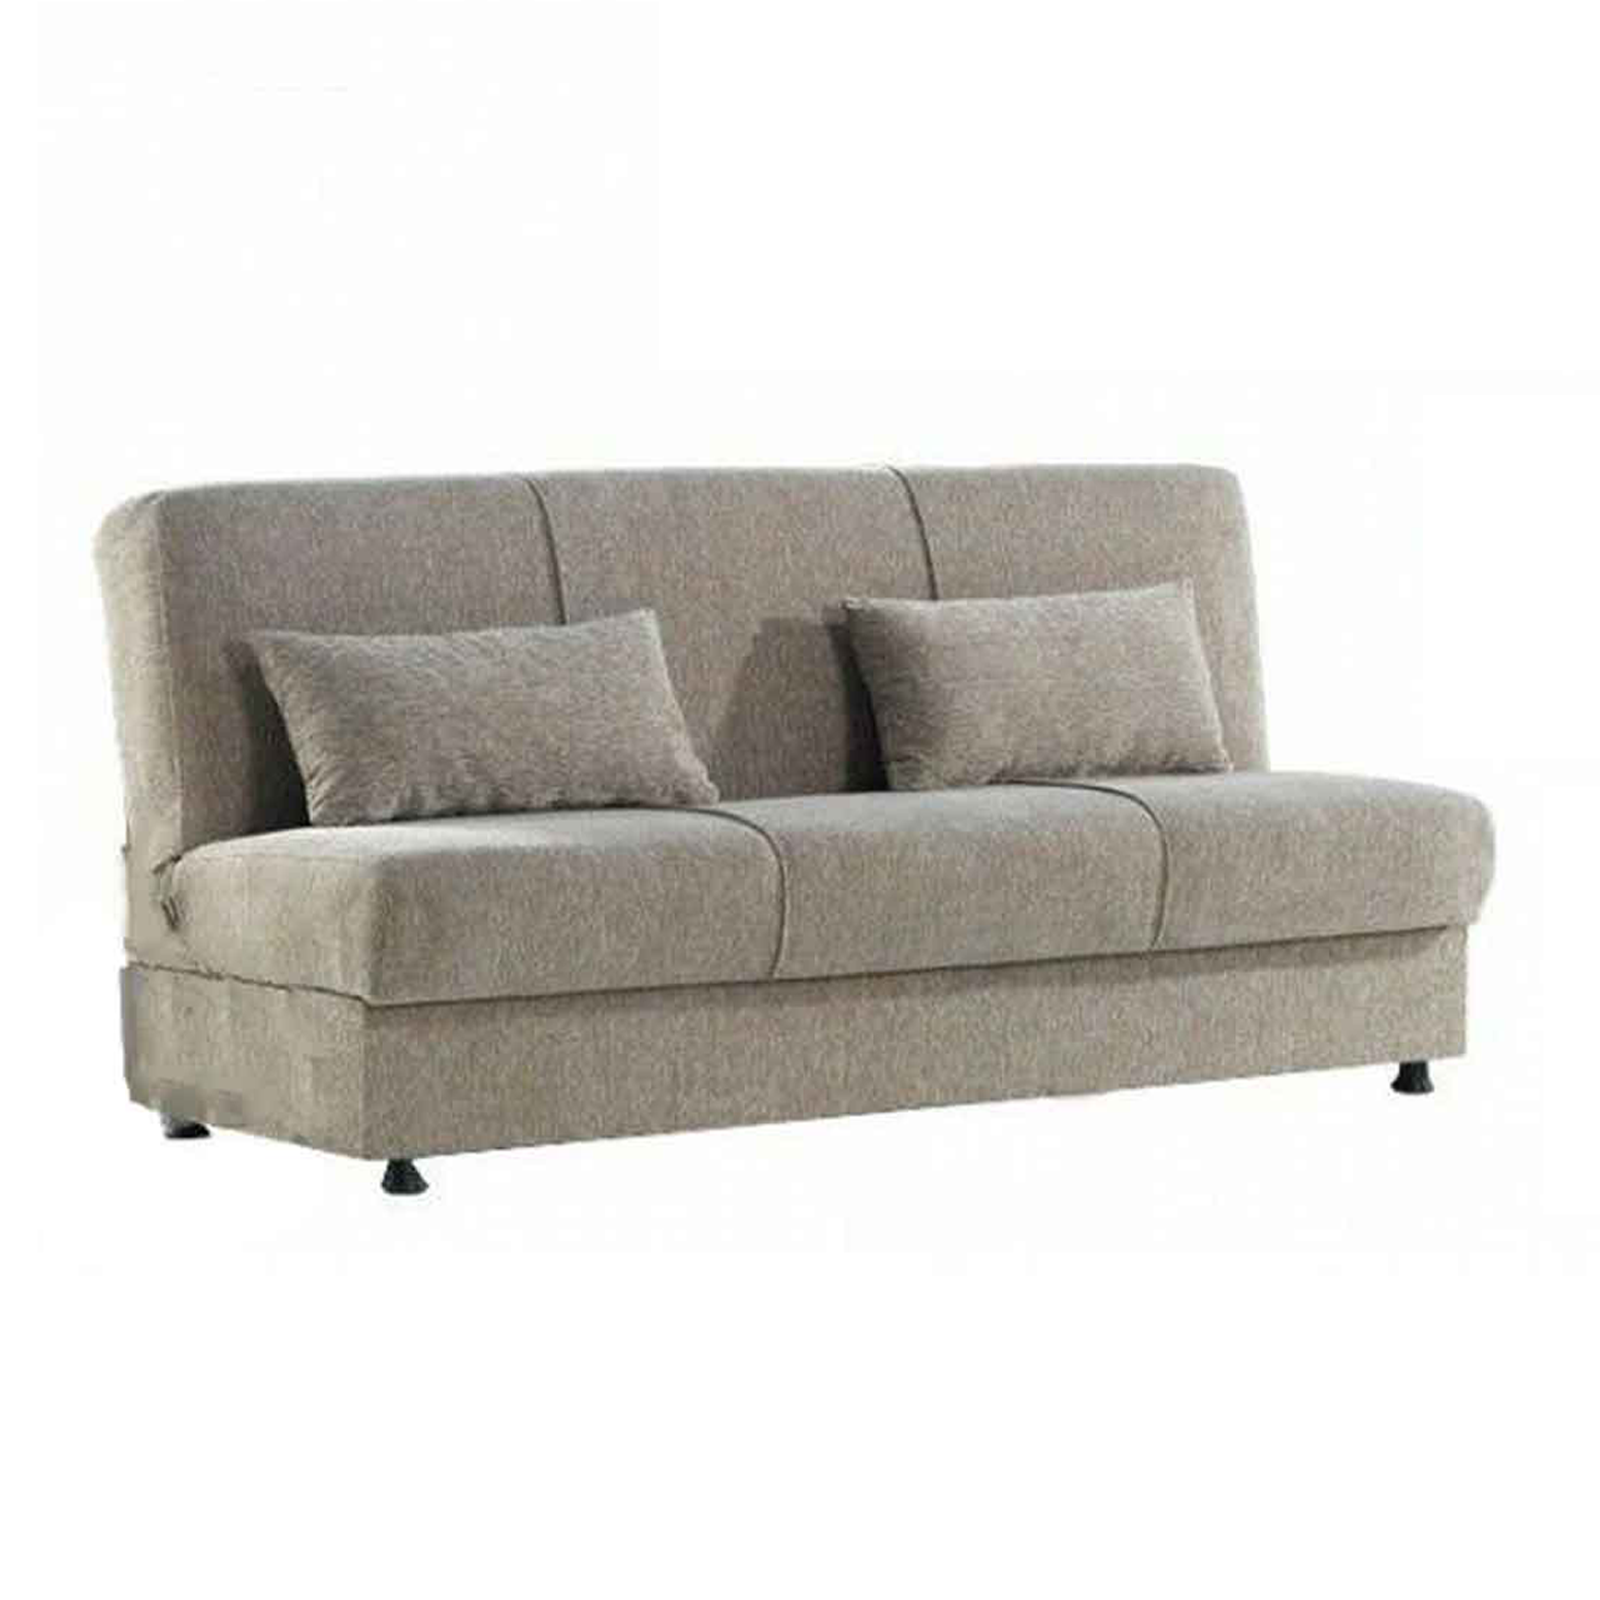 Acogedor sofá preparado para cama de 3 plazas con contenedor en tela 190x64 cm 90h